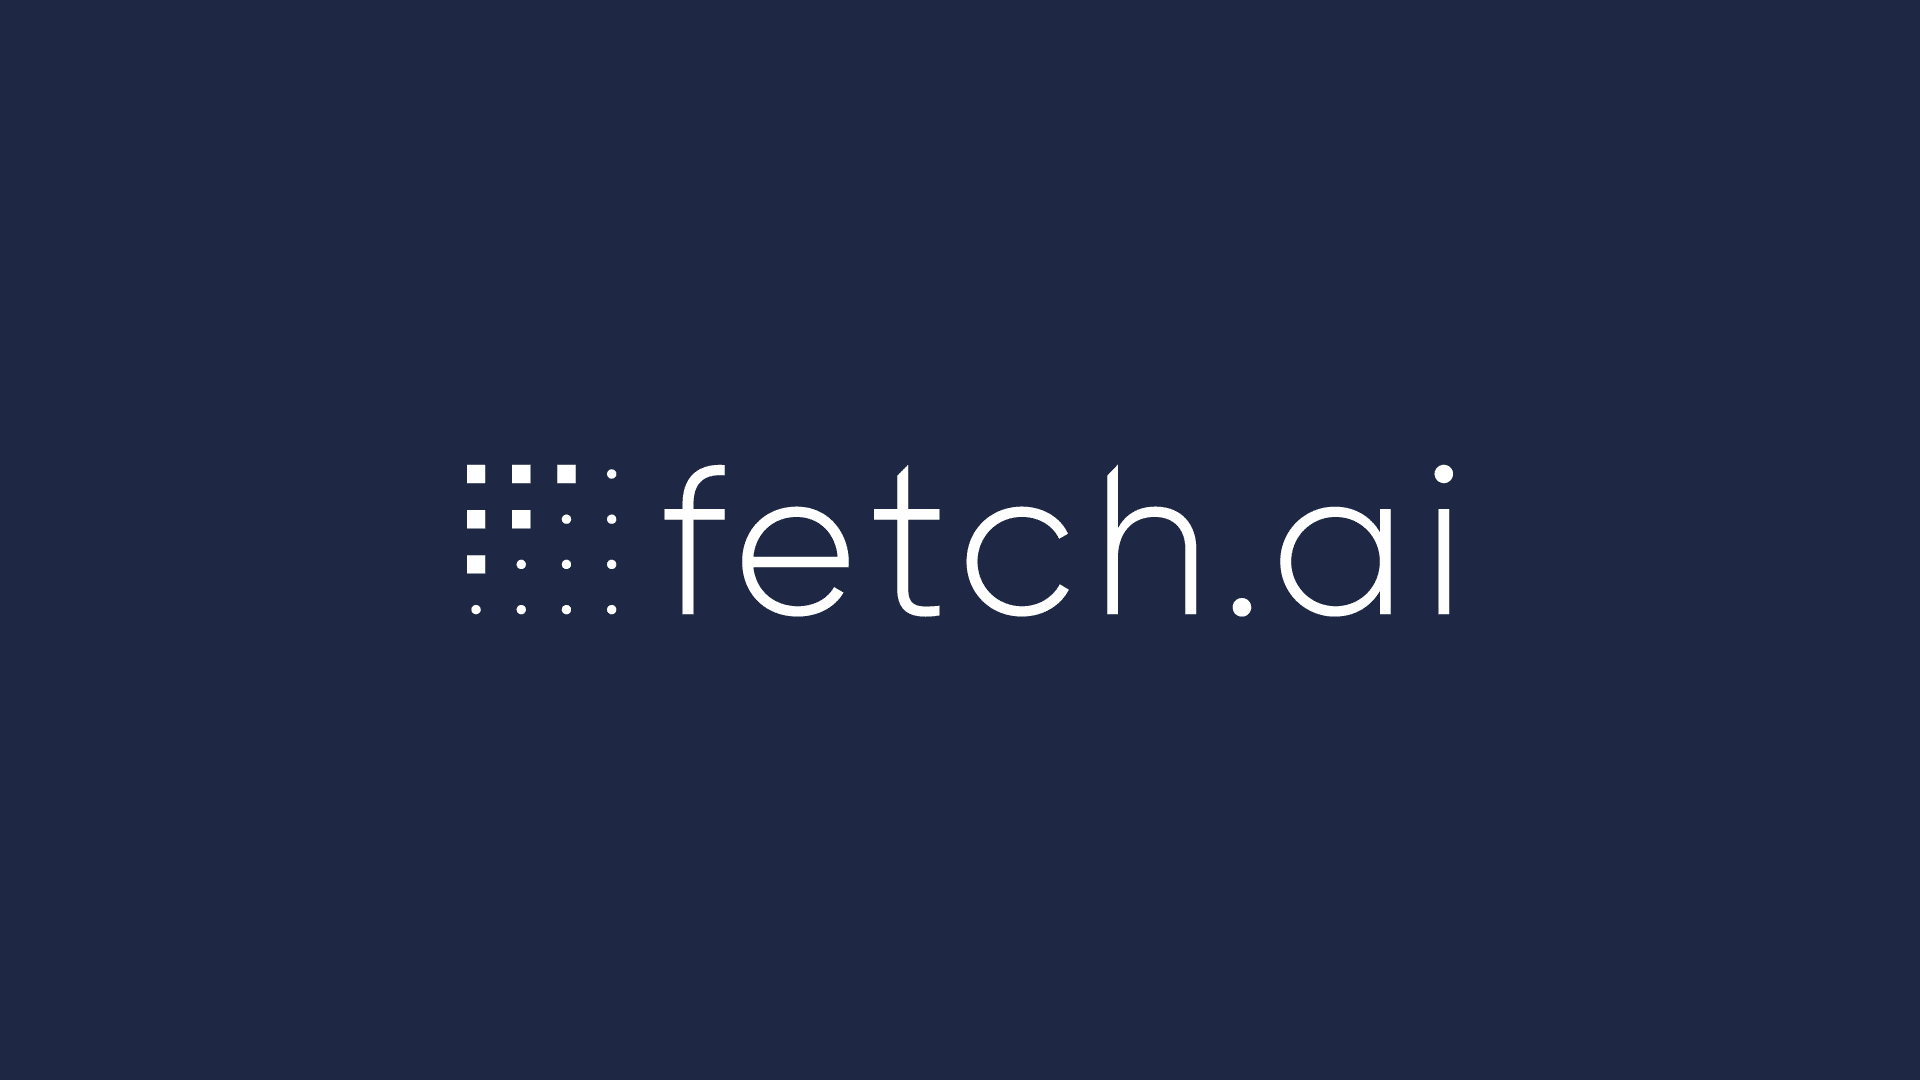 Fetch.ai price under $0.40